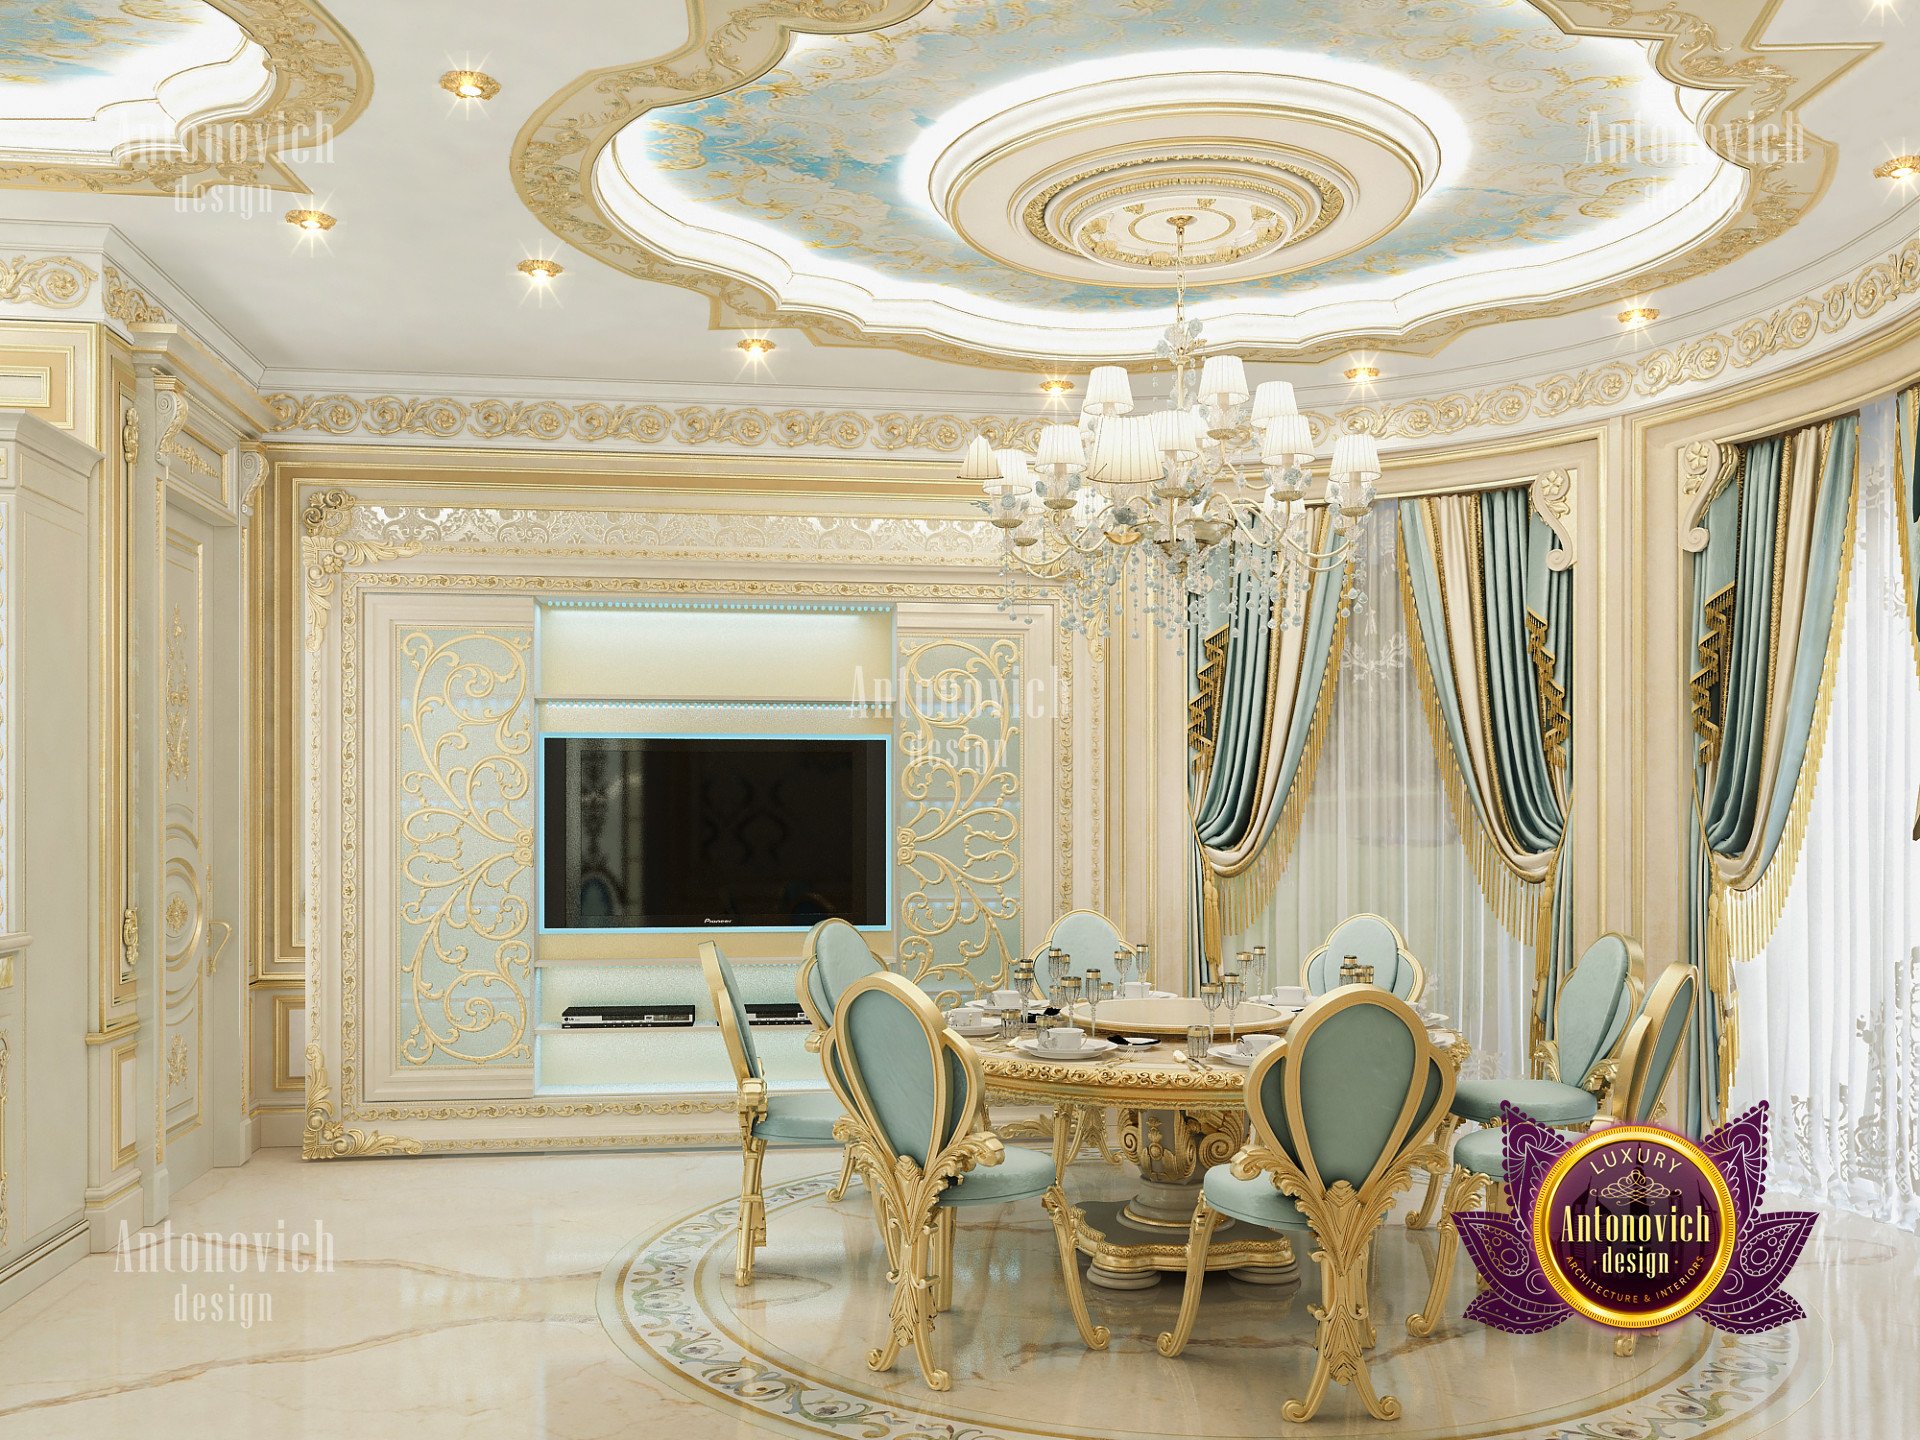 Splendid kitchen interior Dubai